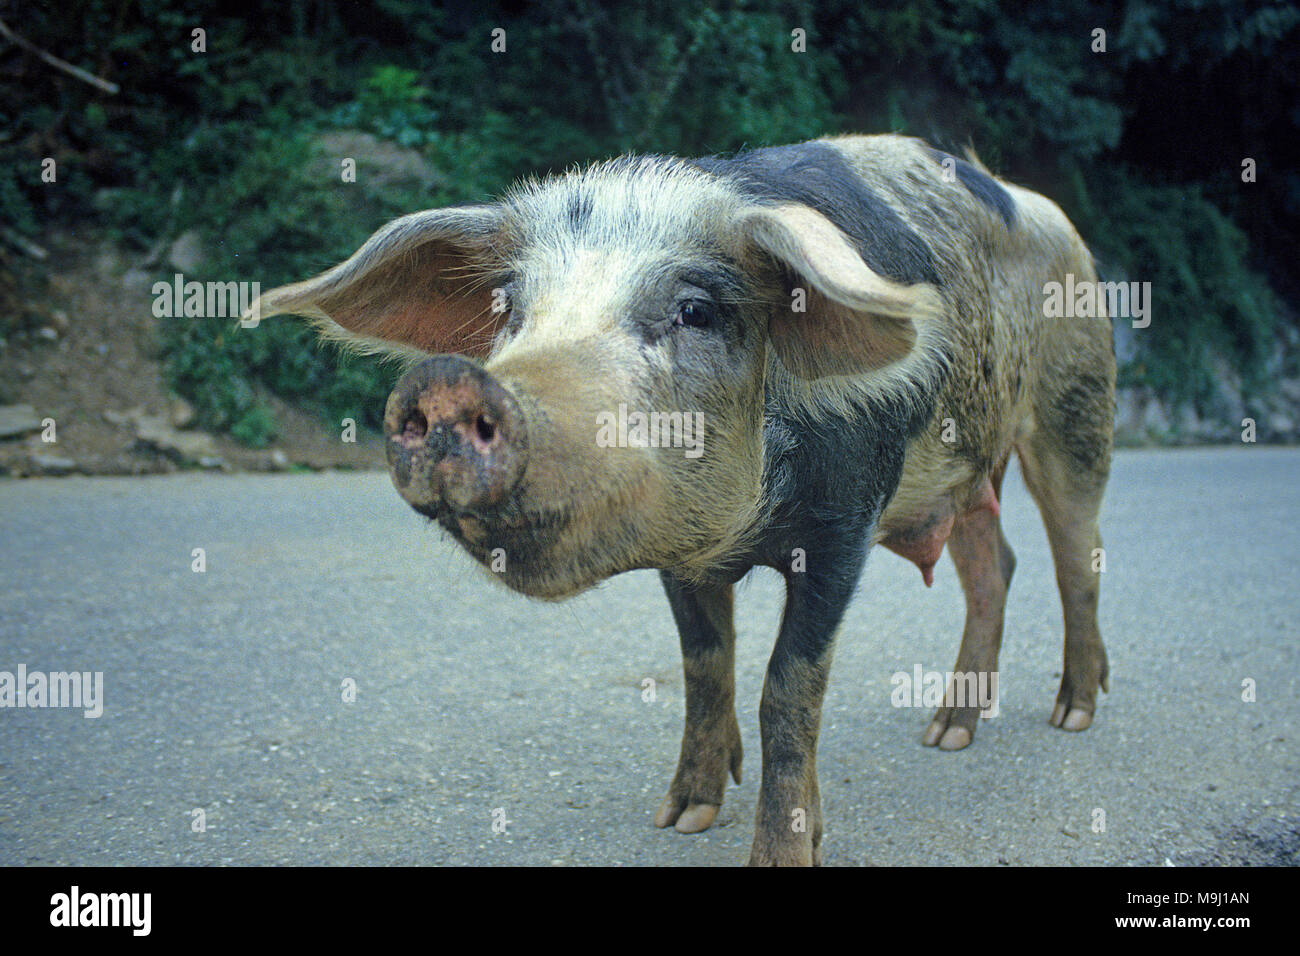 La vie de cochon sur la route, se nourrit de châtaignes et de glands, viandes savoureuses, Corse, France, Europe, Méditerranée Banque D'Images